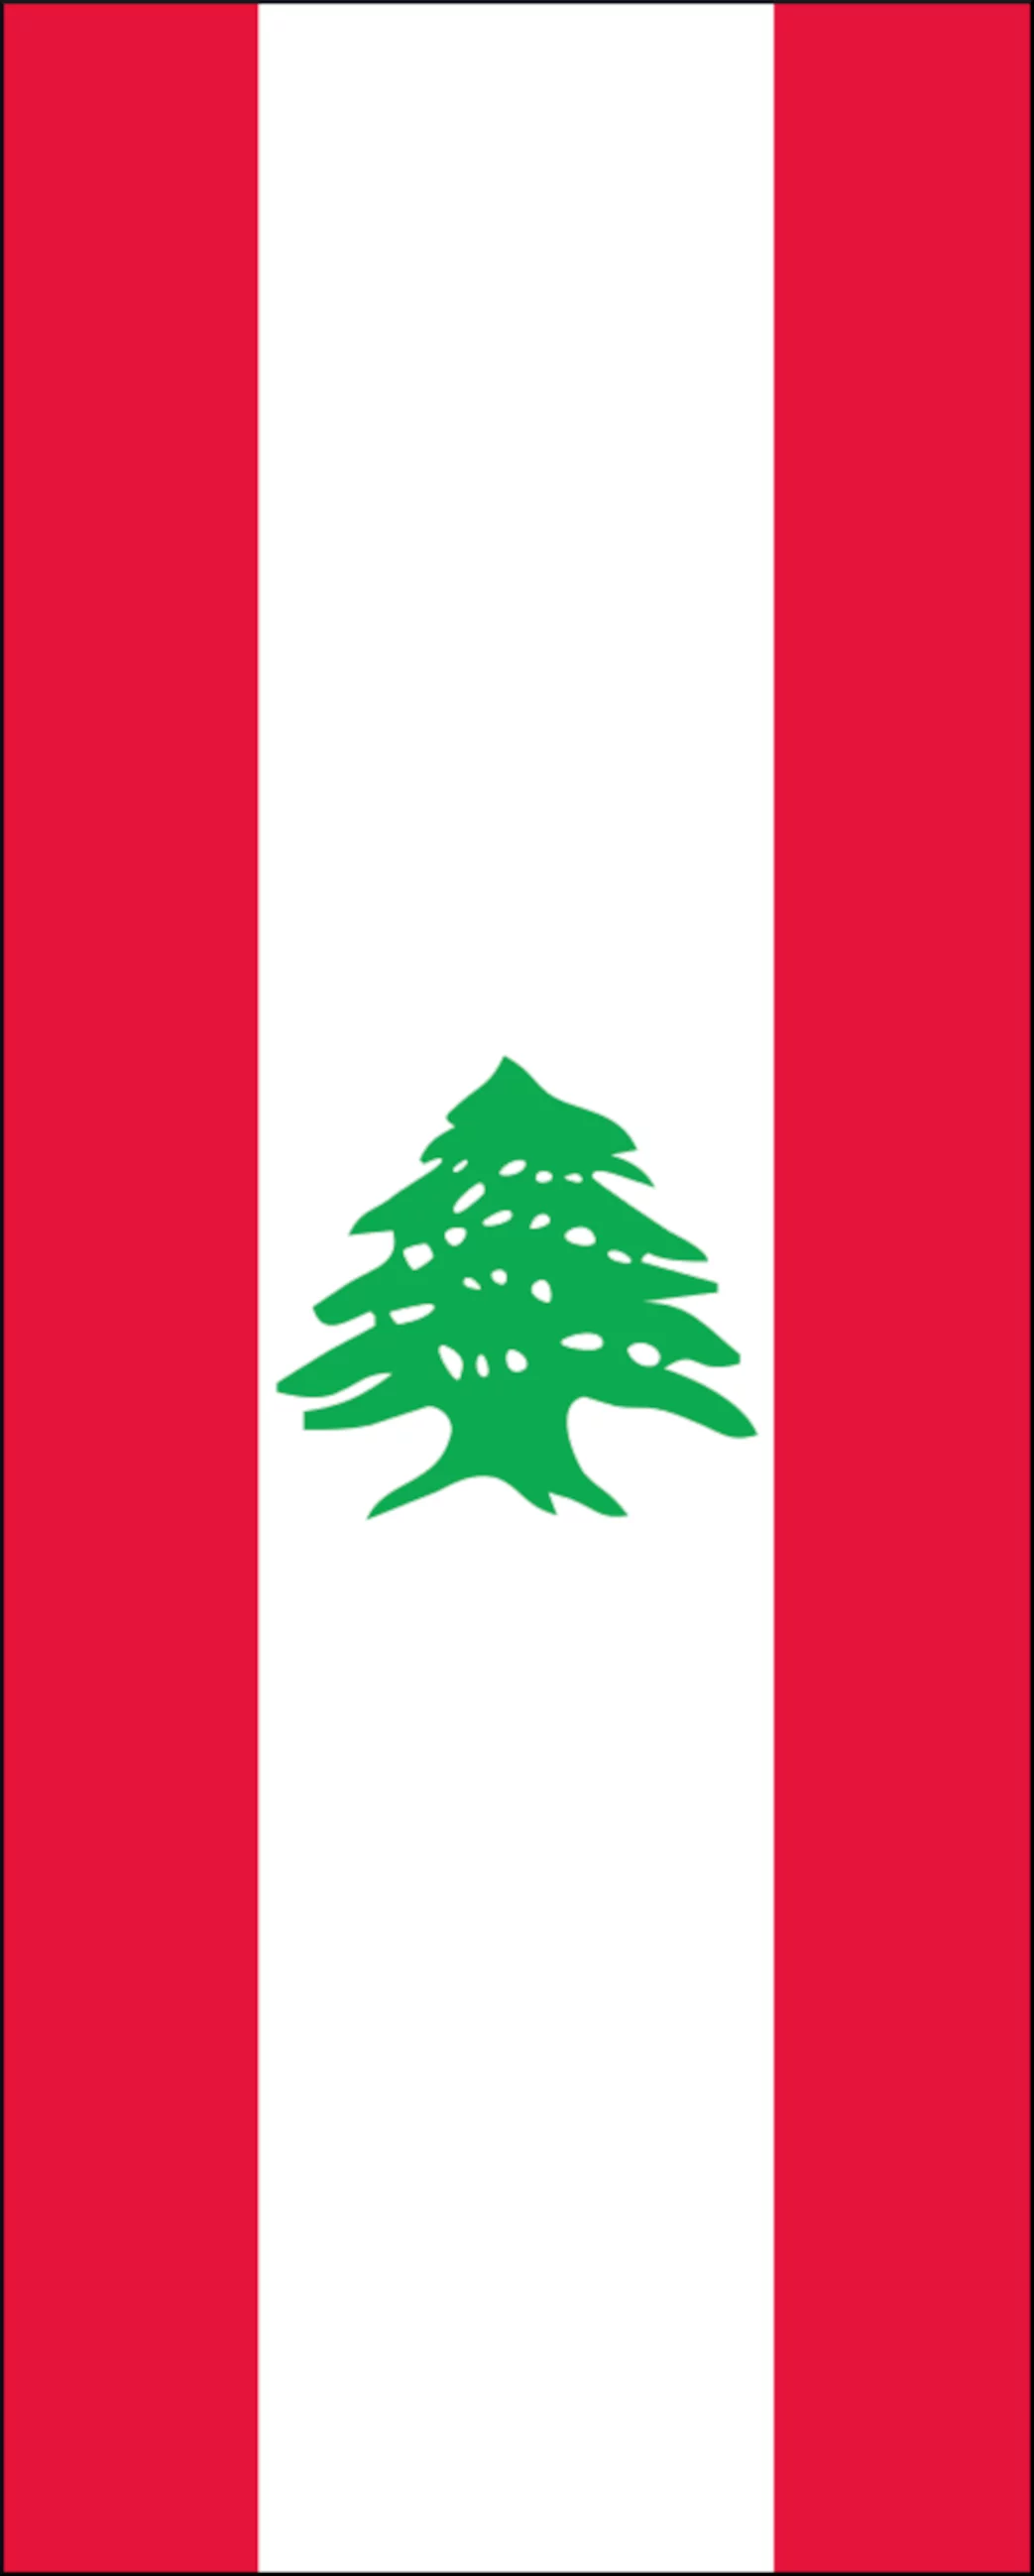 Flagge Libanon